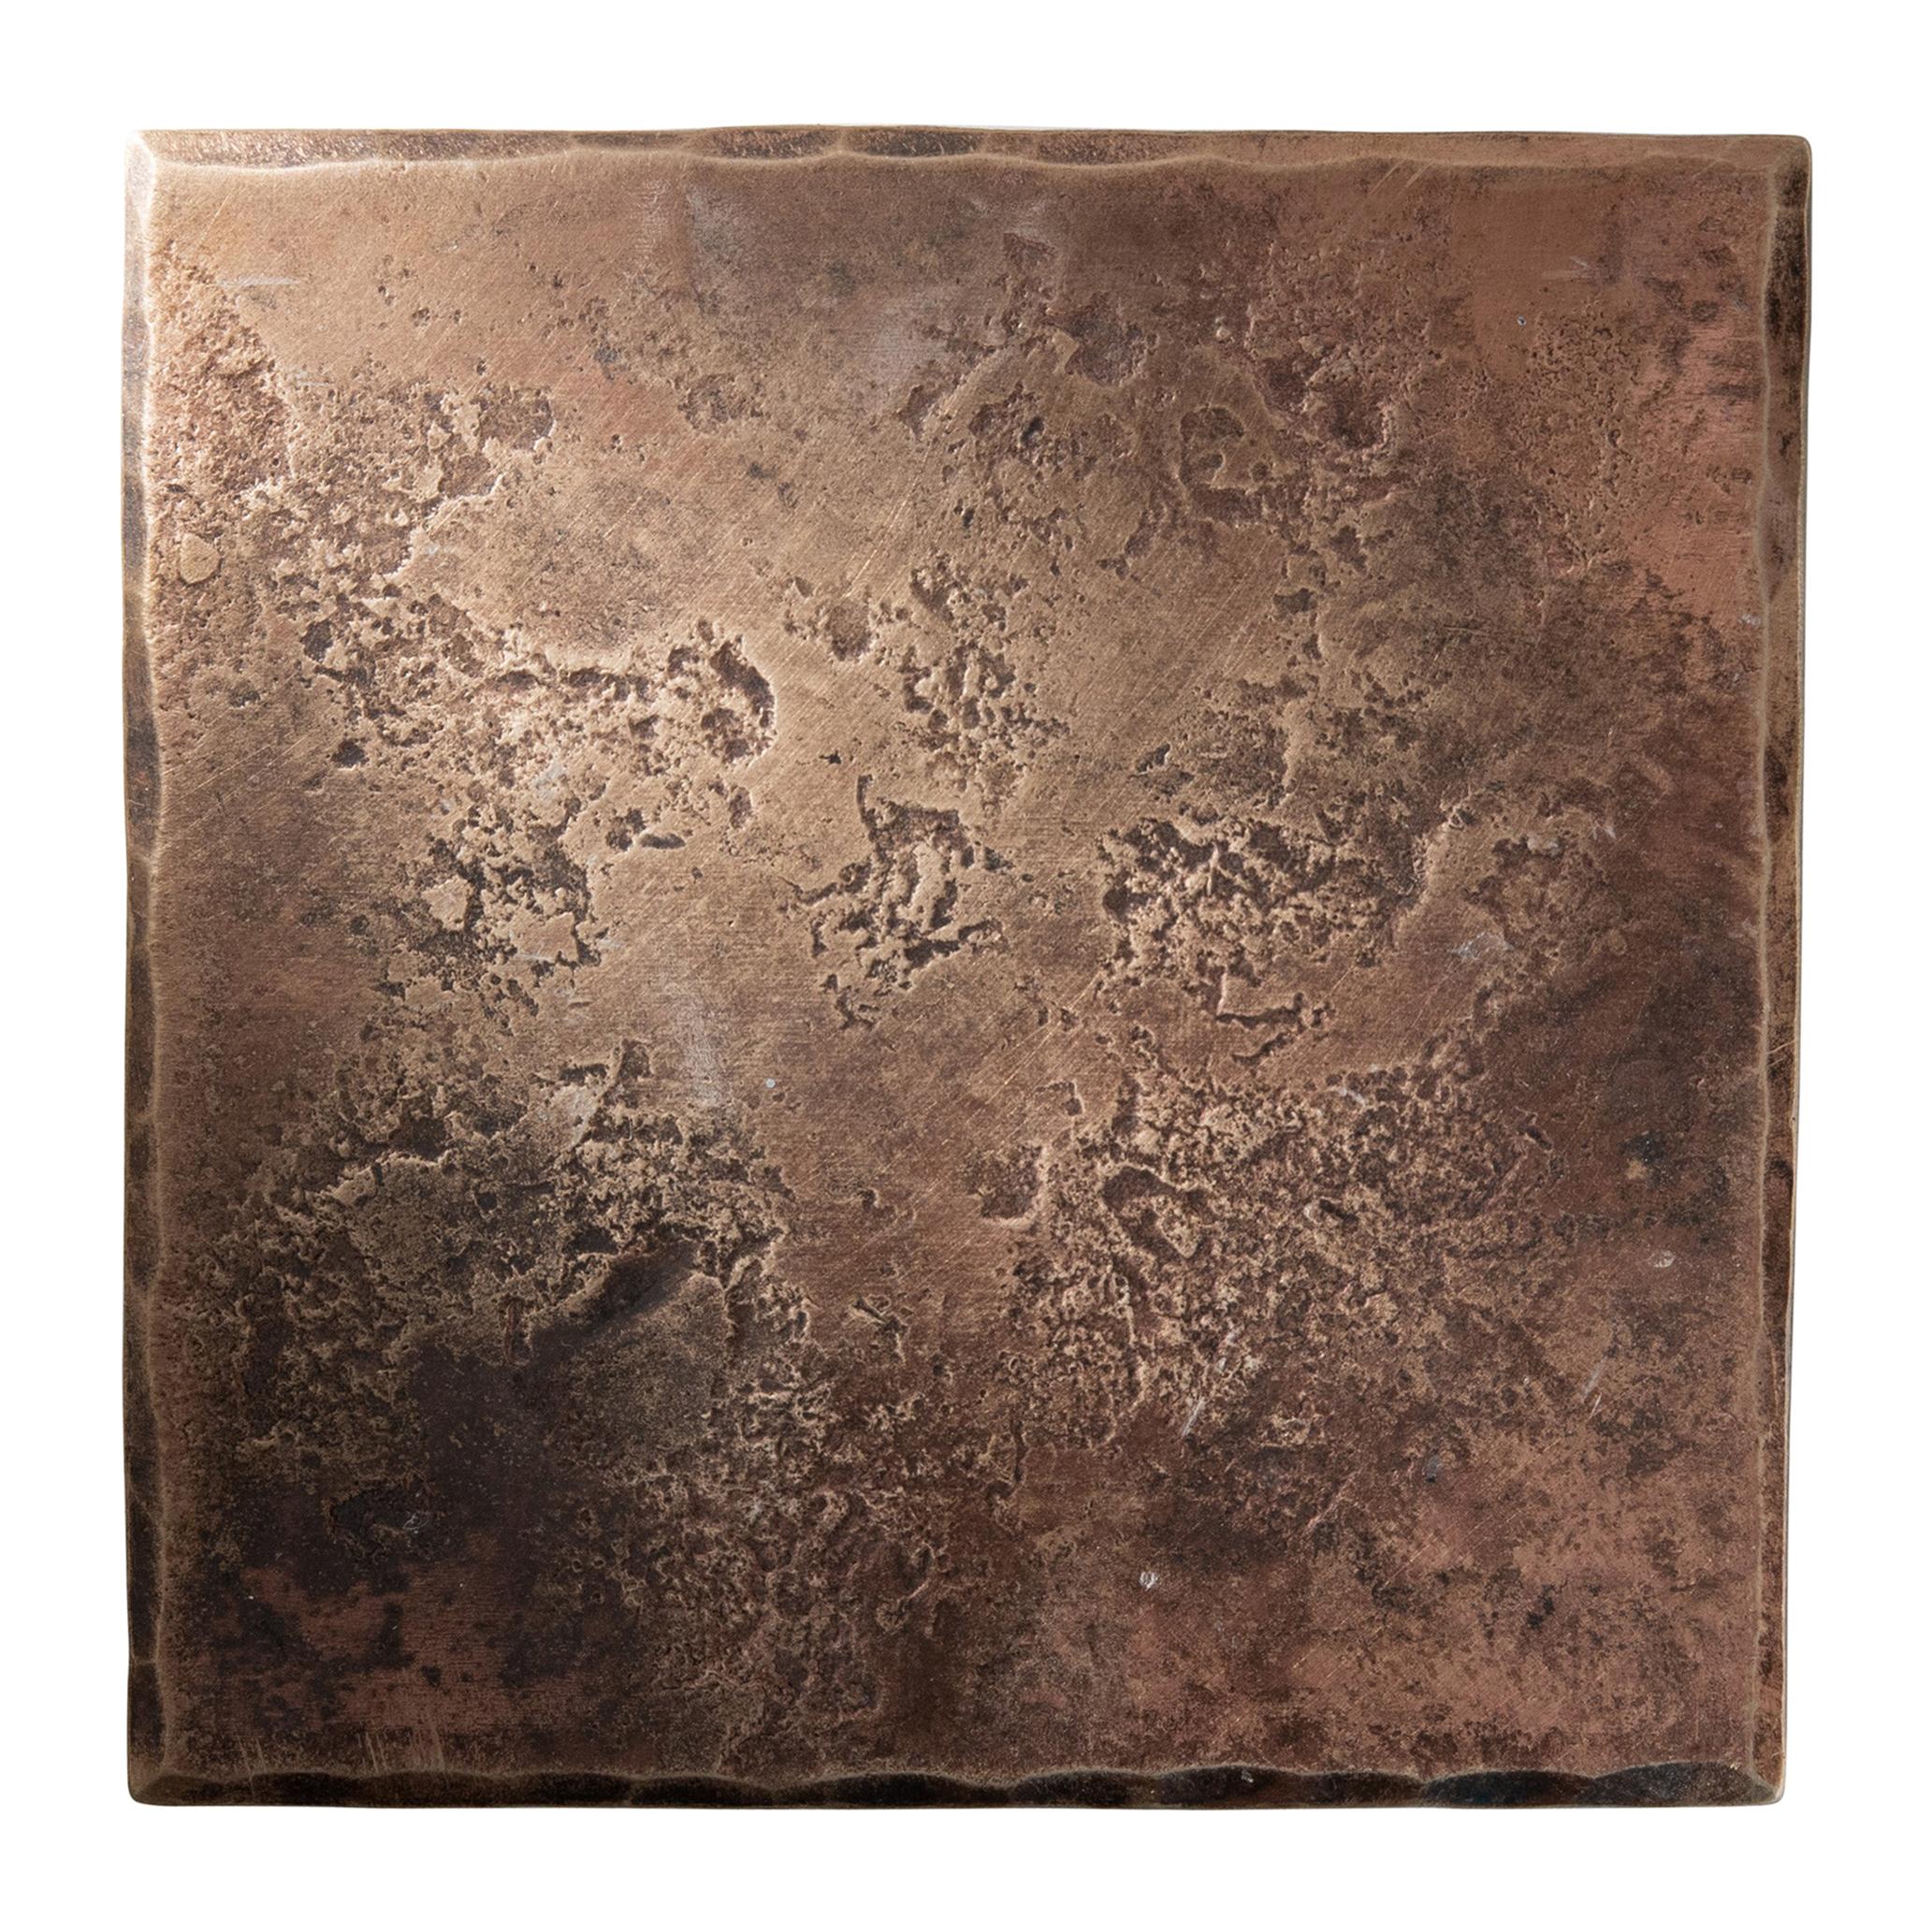 Quadratischer Untersetzer aus geschmiedeter Bronze mit gehämmerter und polierter Oberfläche